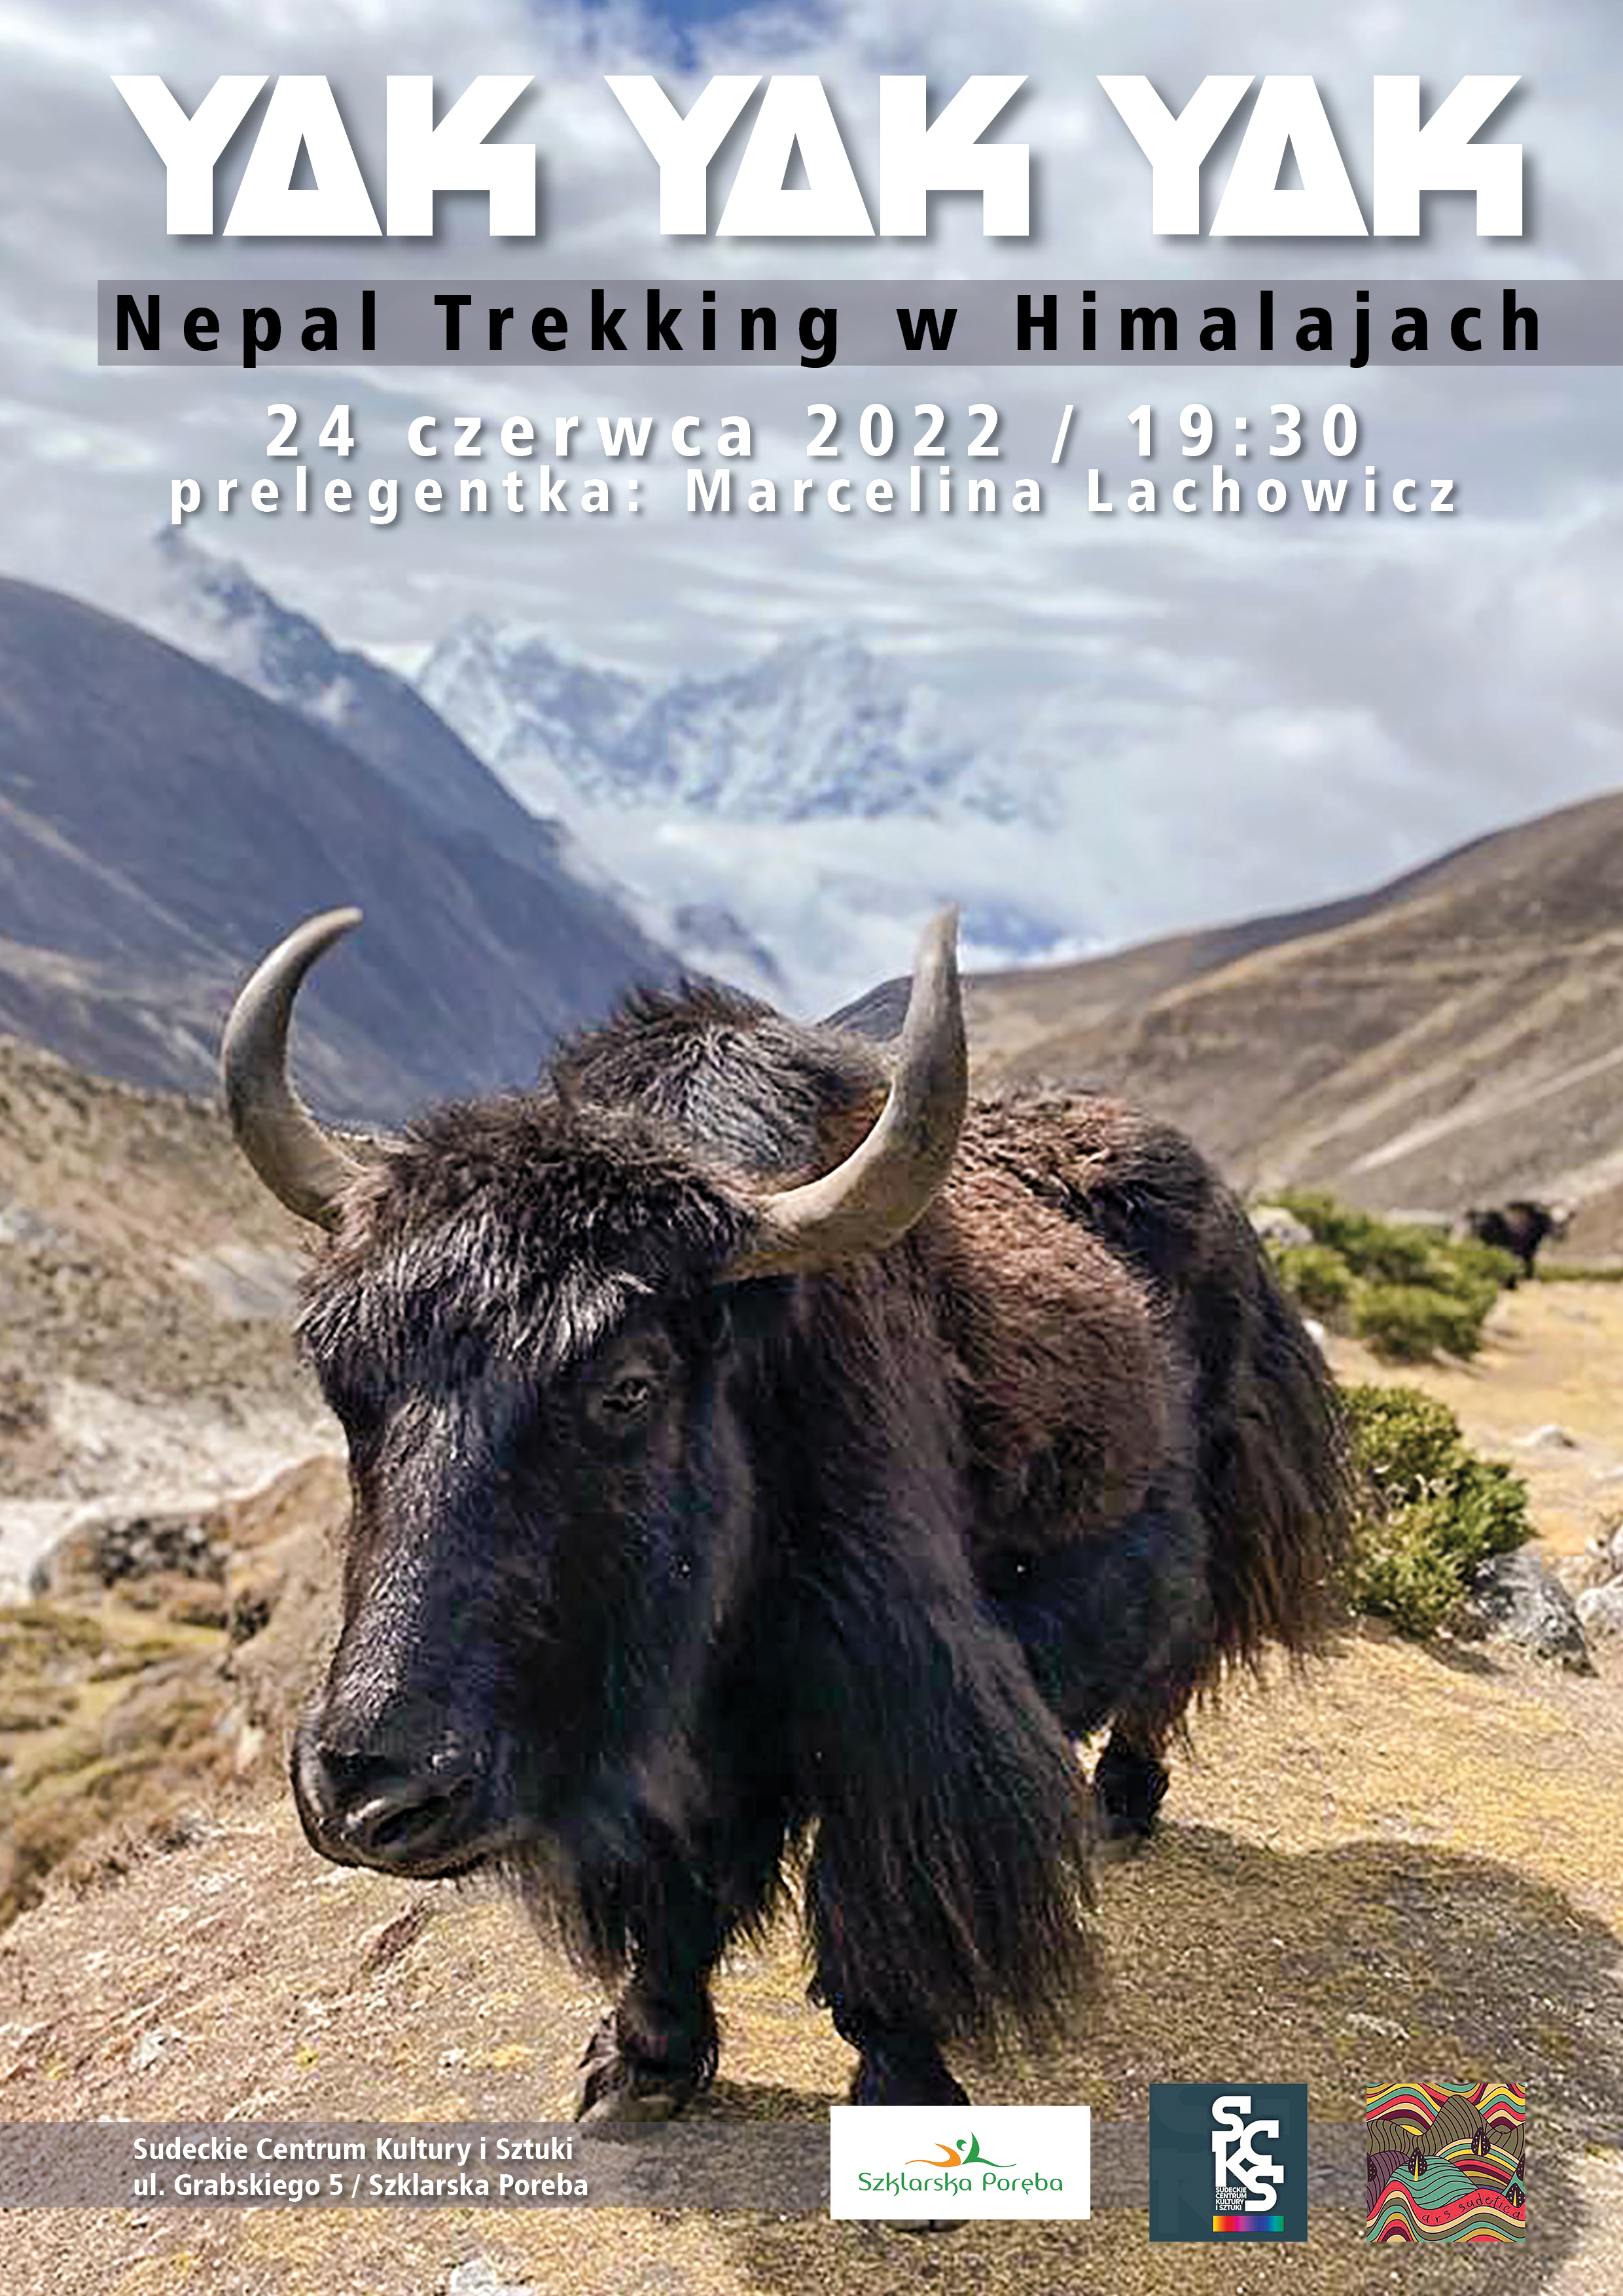 Prelekcja Marceliny Lachowicz 24 czerwca 2022 roku w Sudeckim Centrum Kultury i Sztuki o Himalajach